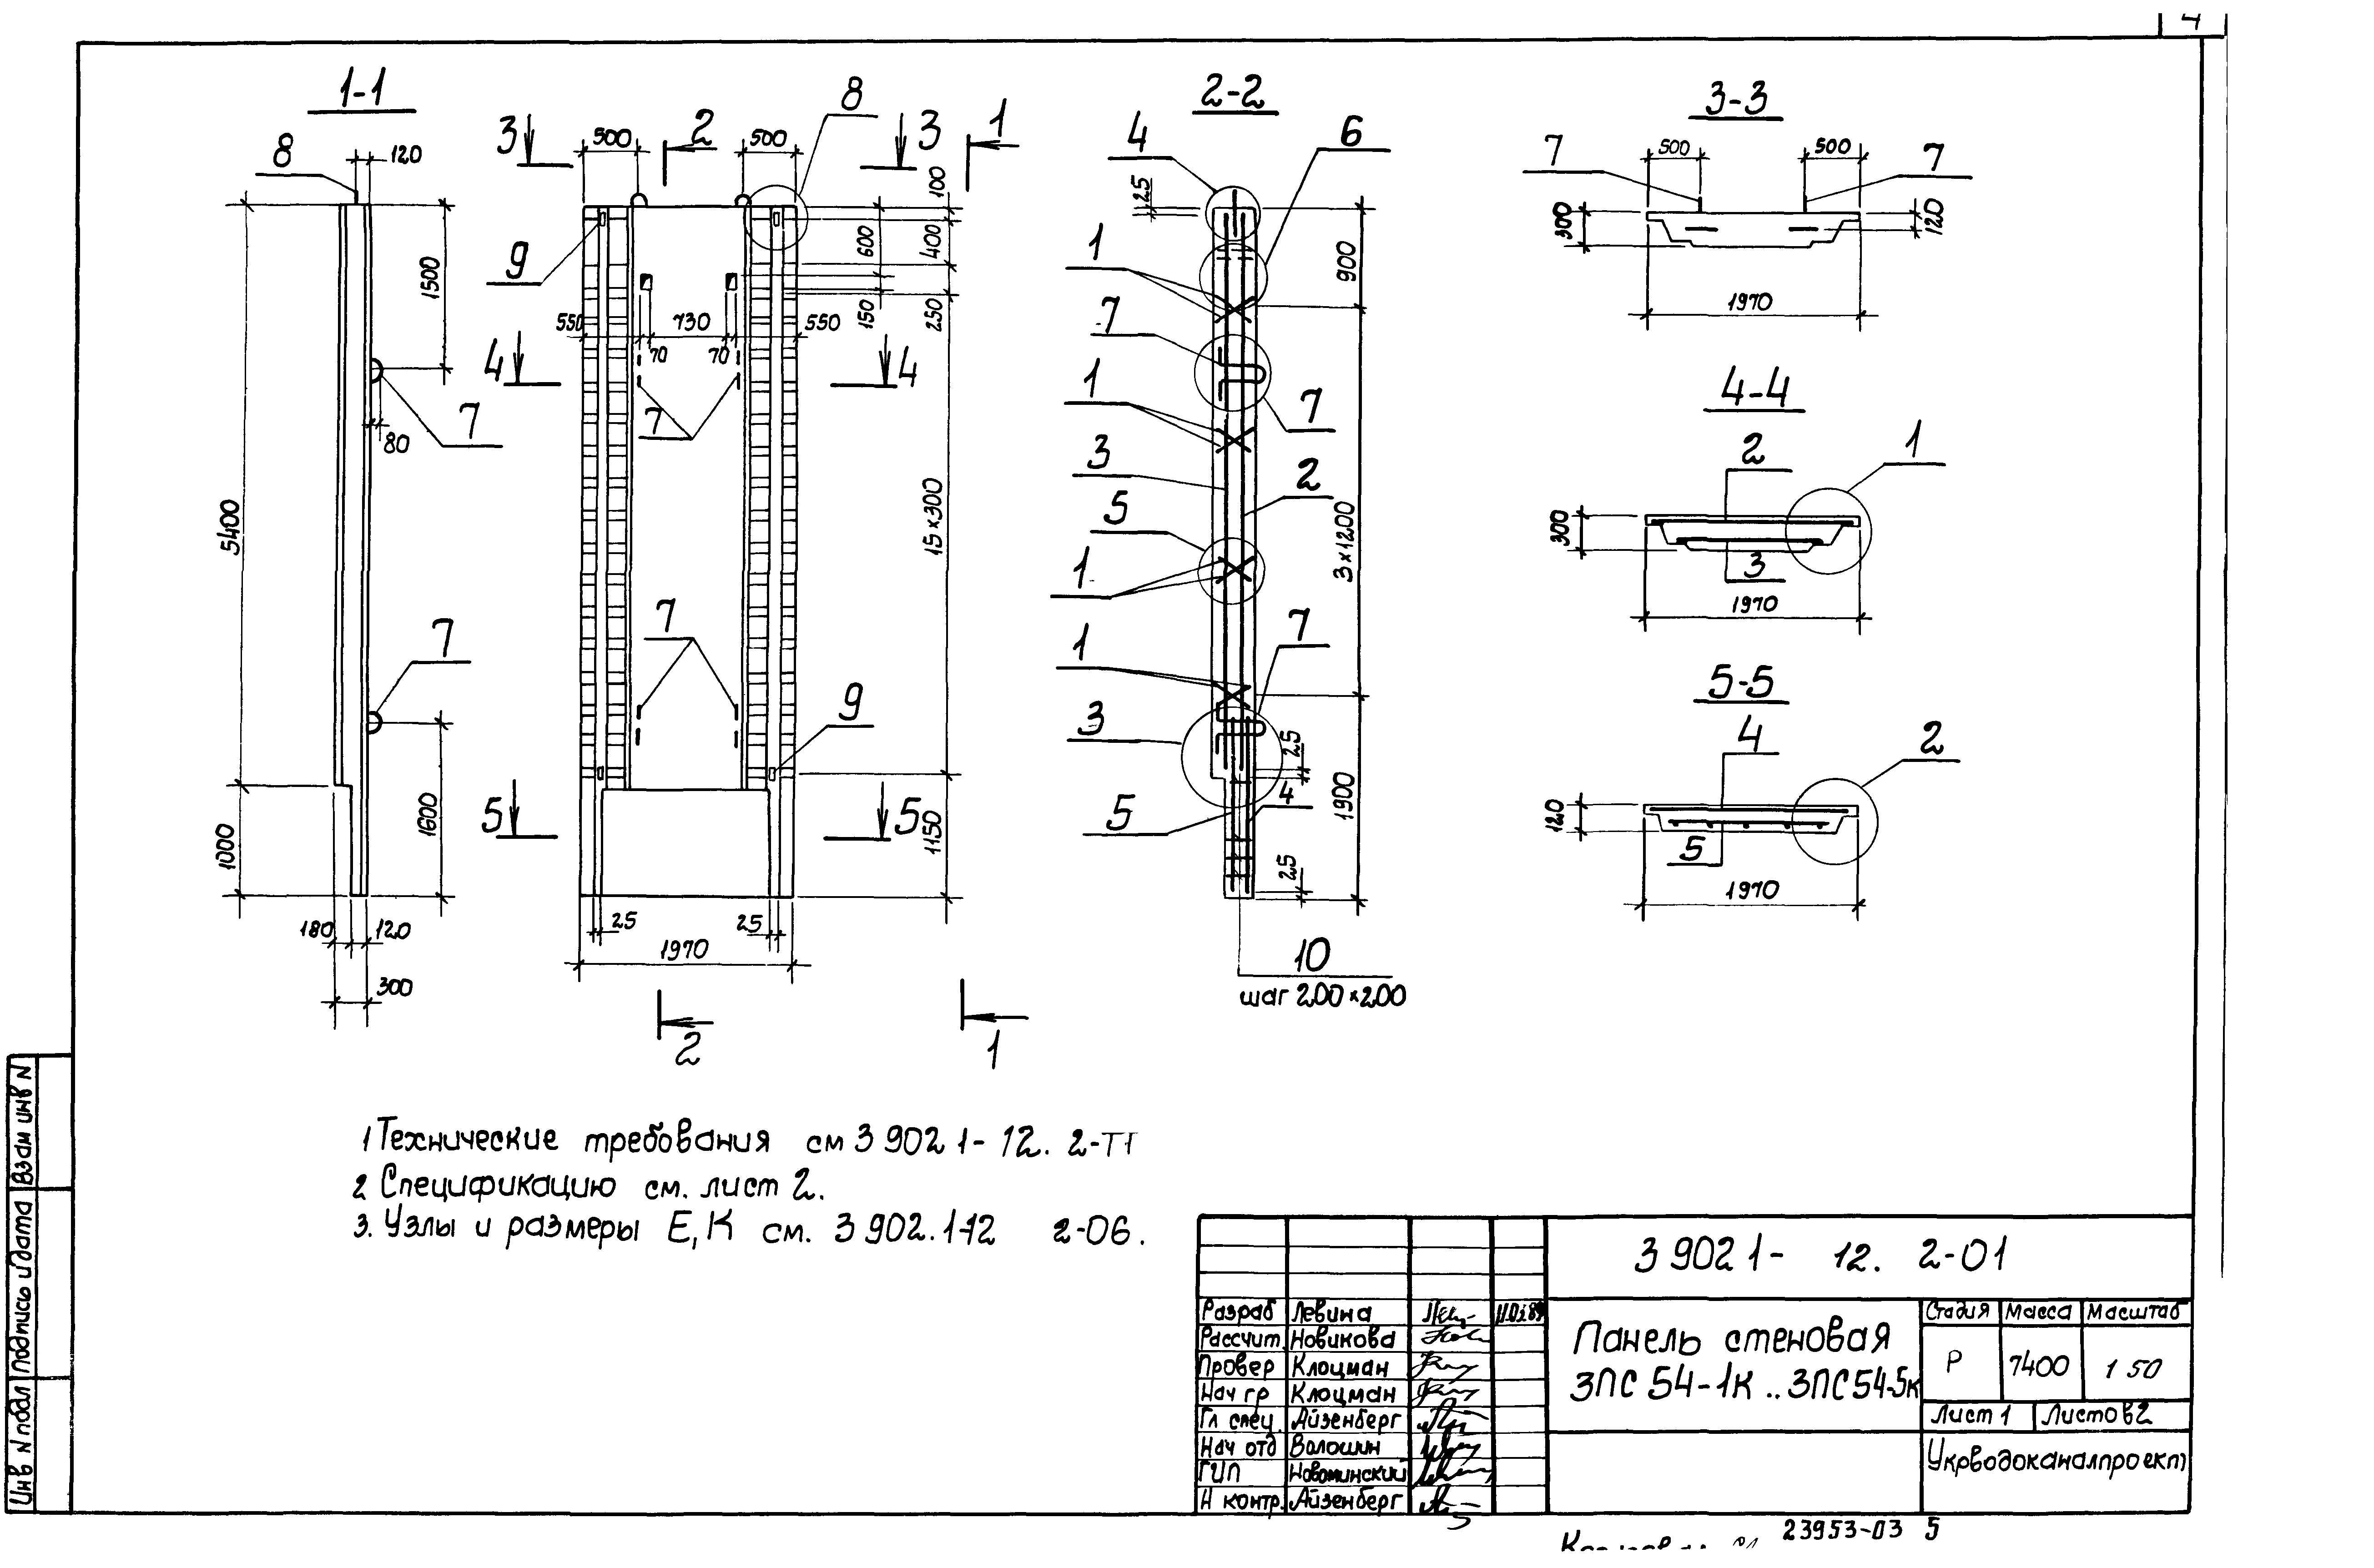 Панель стеновая 3ПС54-4к Серия 3.902.1-12, вып.2